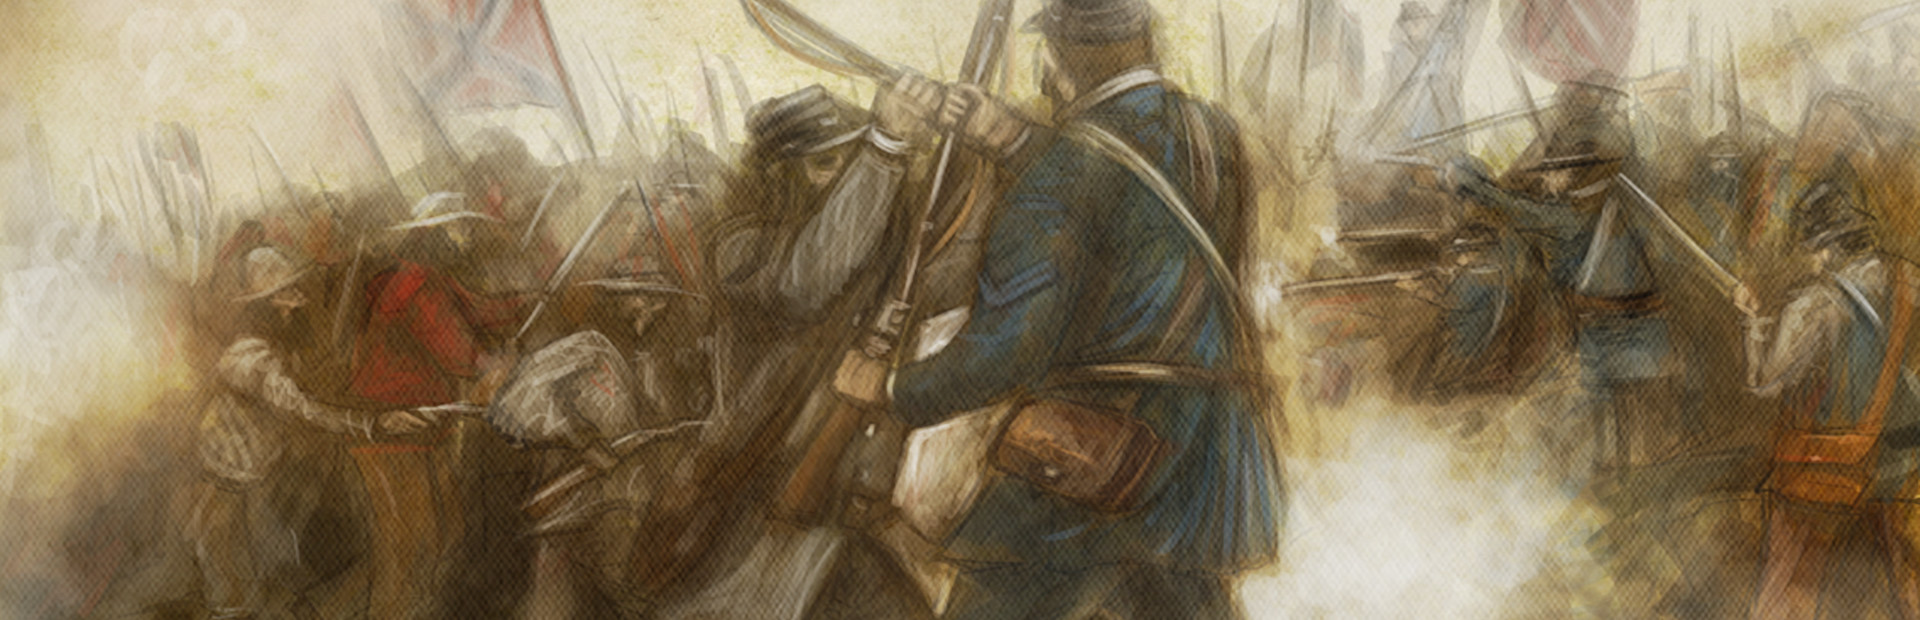 Civil War: 1864 cover image